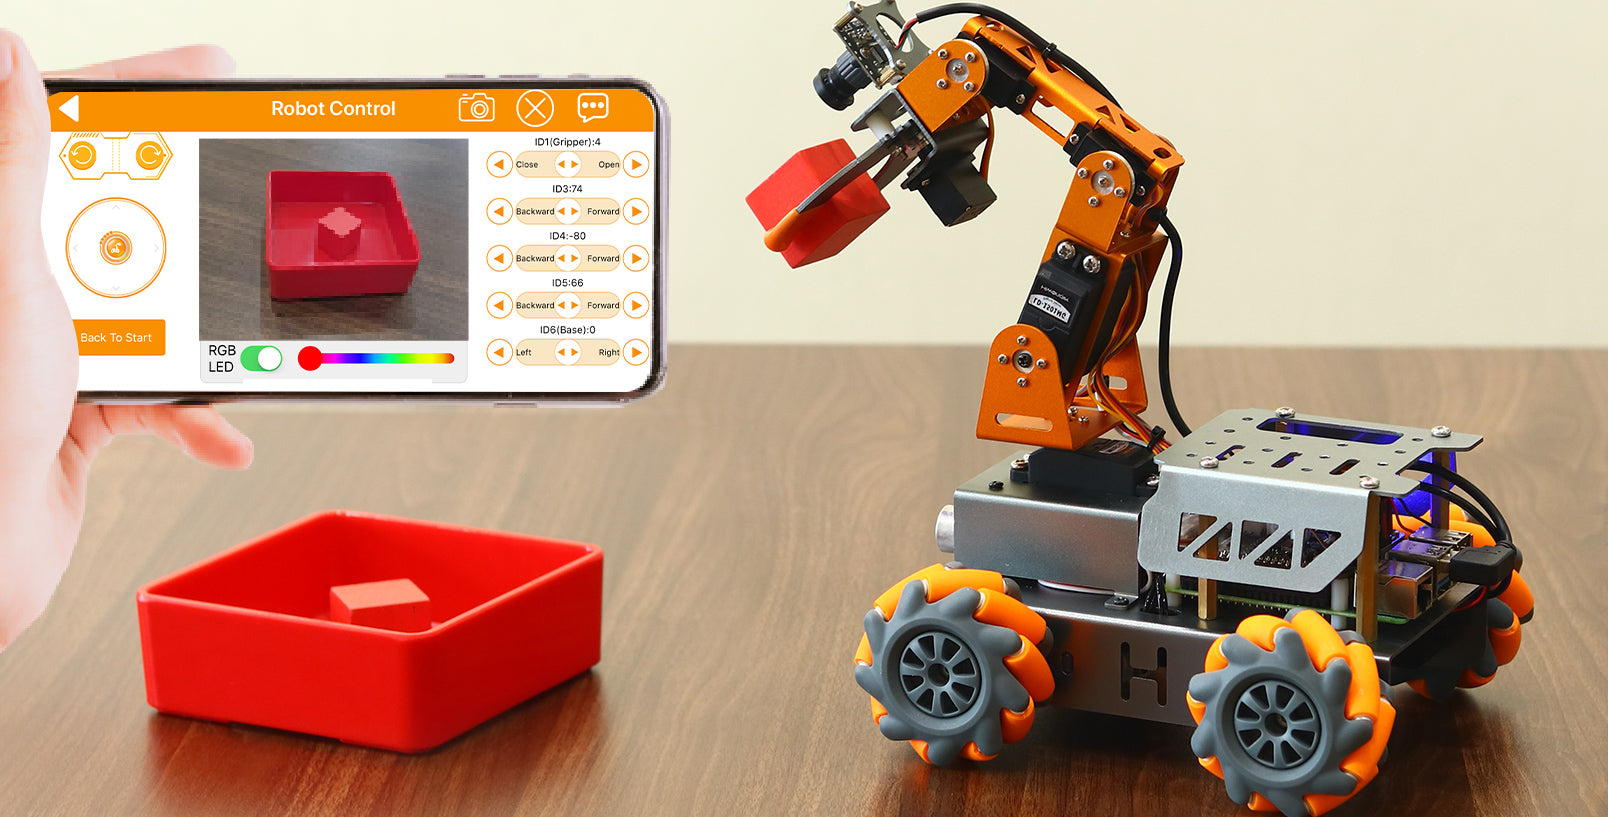 Образовательный набор для изучения мобильных робототехнических систем с возможностью машинного обучения "Мастер ИН". Продвинутый уровень